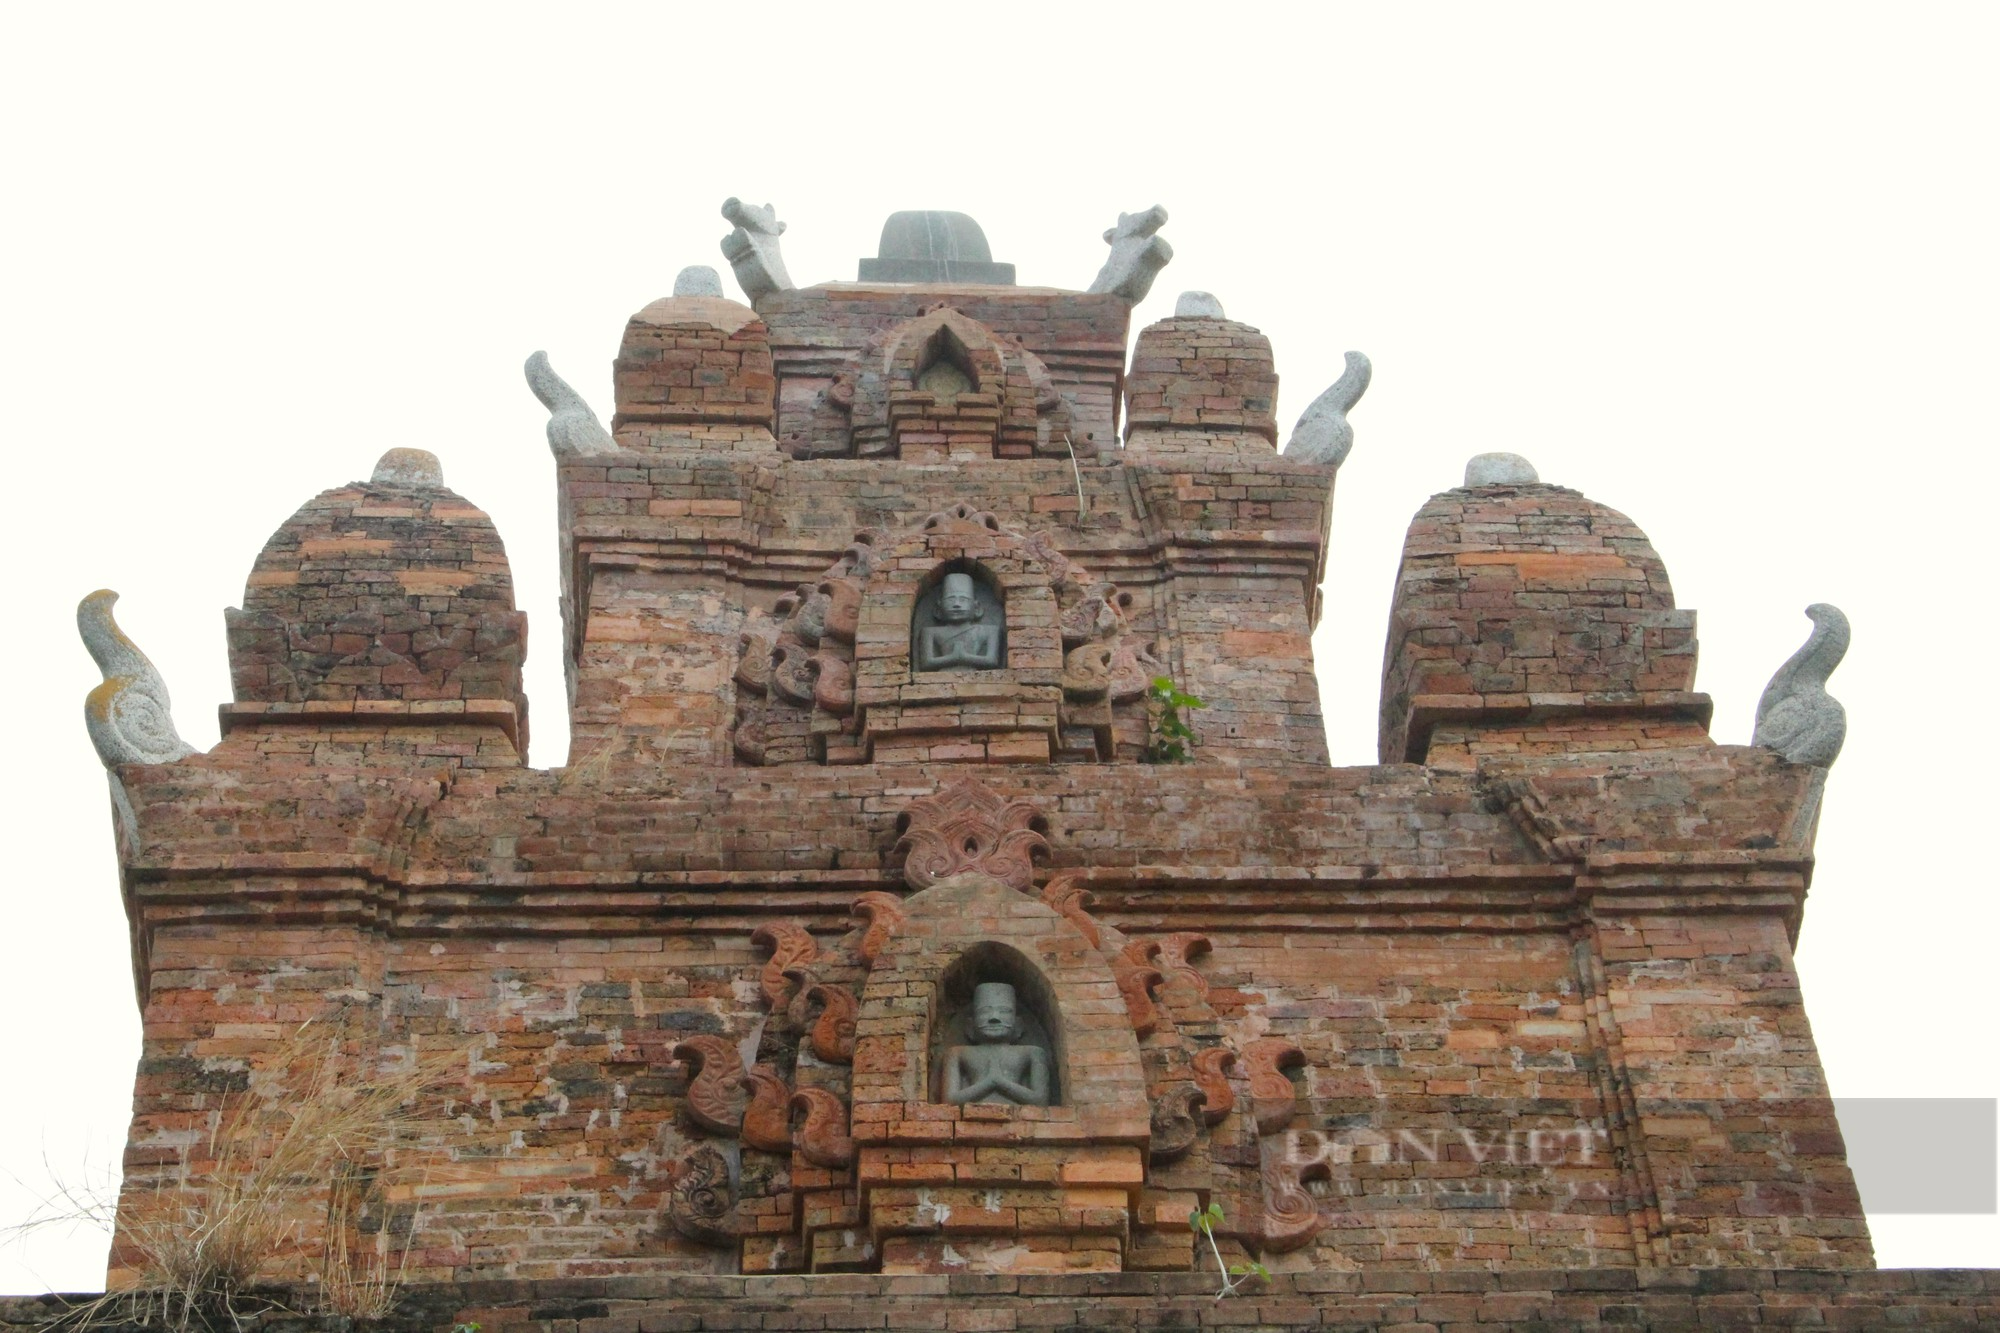 Bí ẩn bảo vật quốc gia bên trong tháp Chăm thờ vị vua cuối cùng của vương quốc Chămpa ở Ninh Thuận - Ảnh 4.